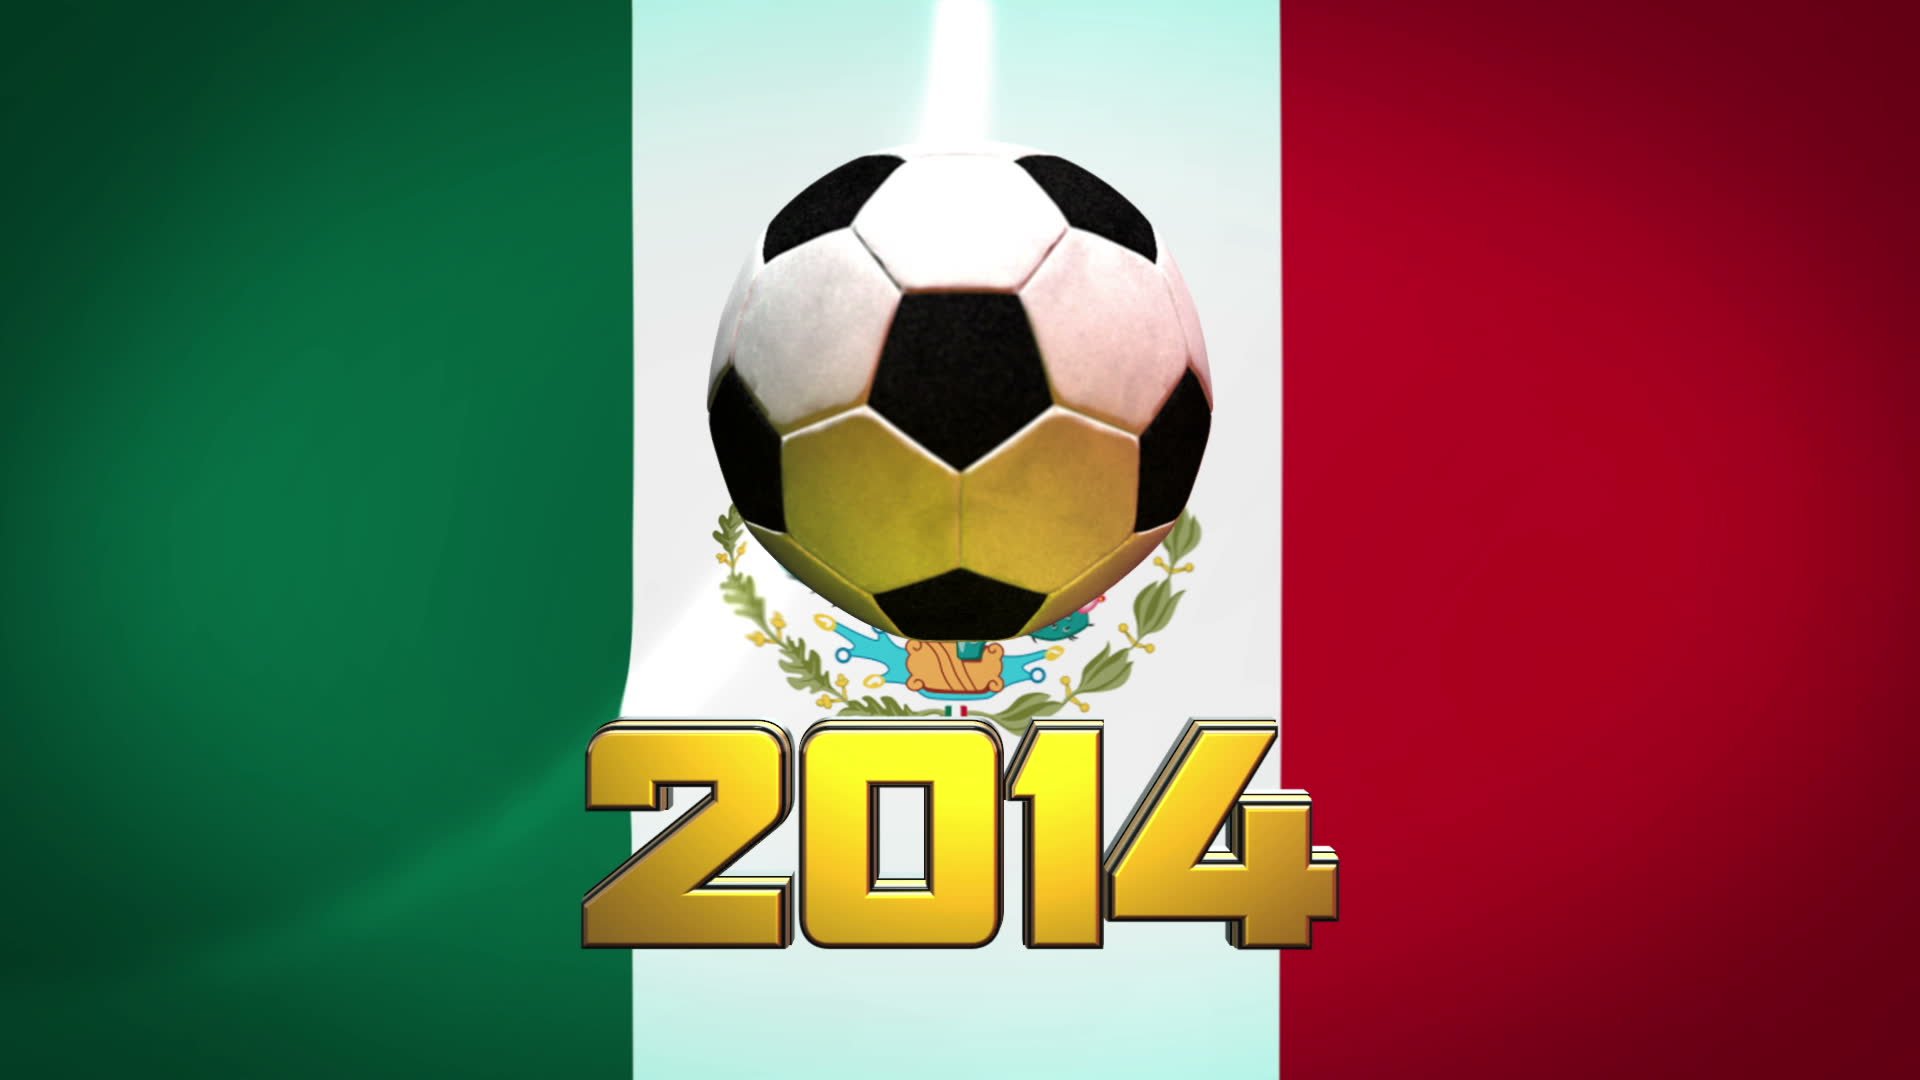 Mexico Soccer Wallpaper